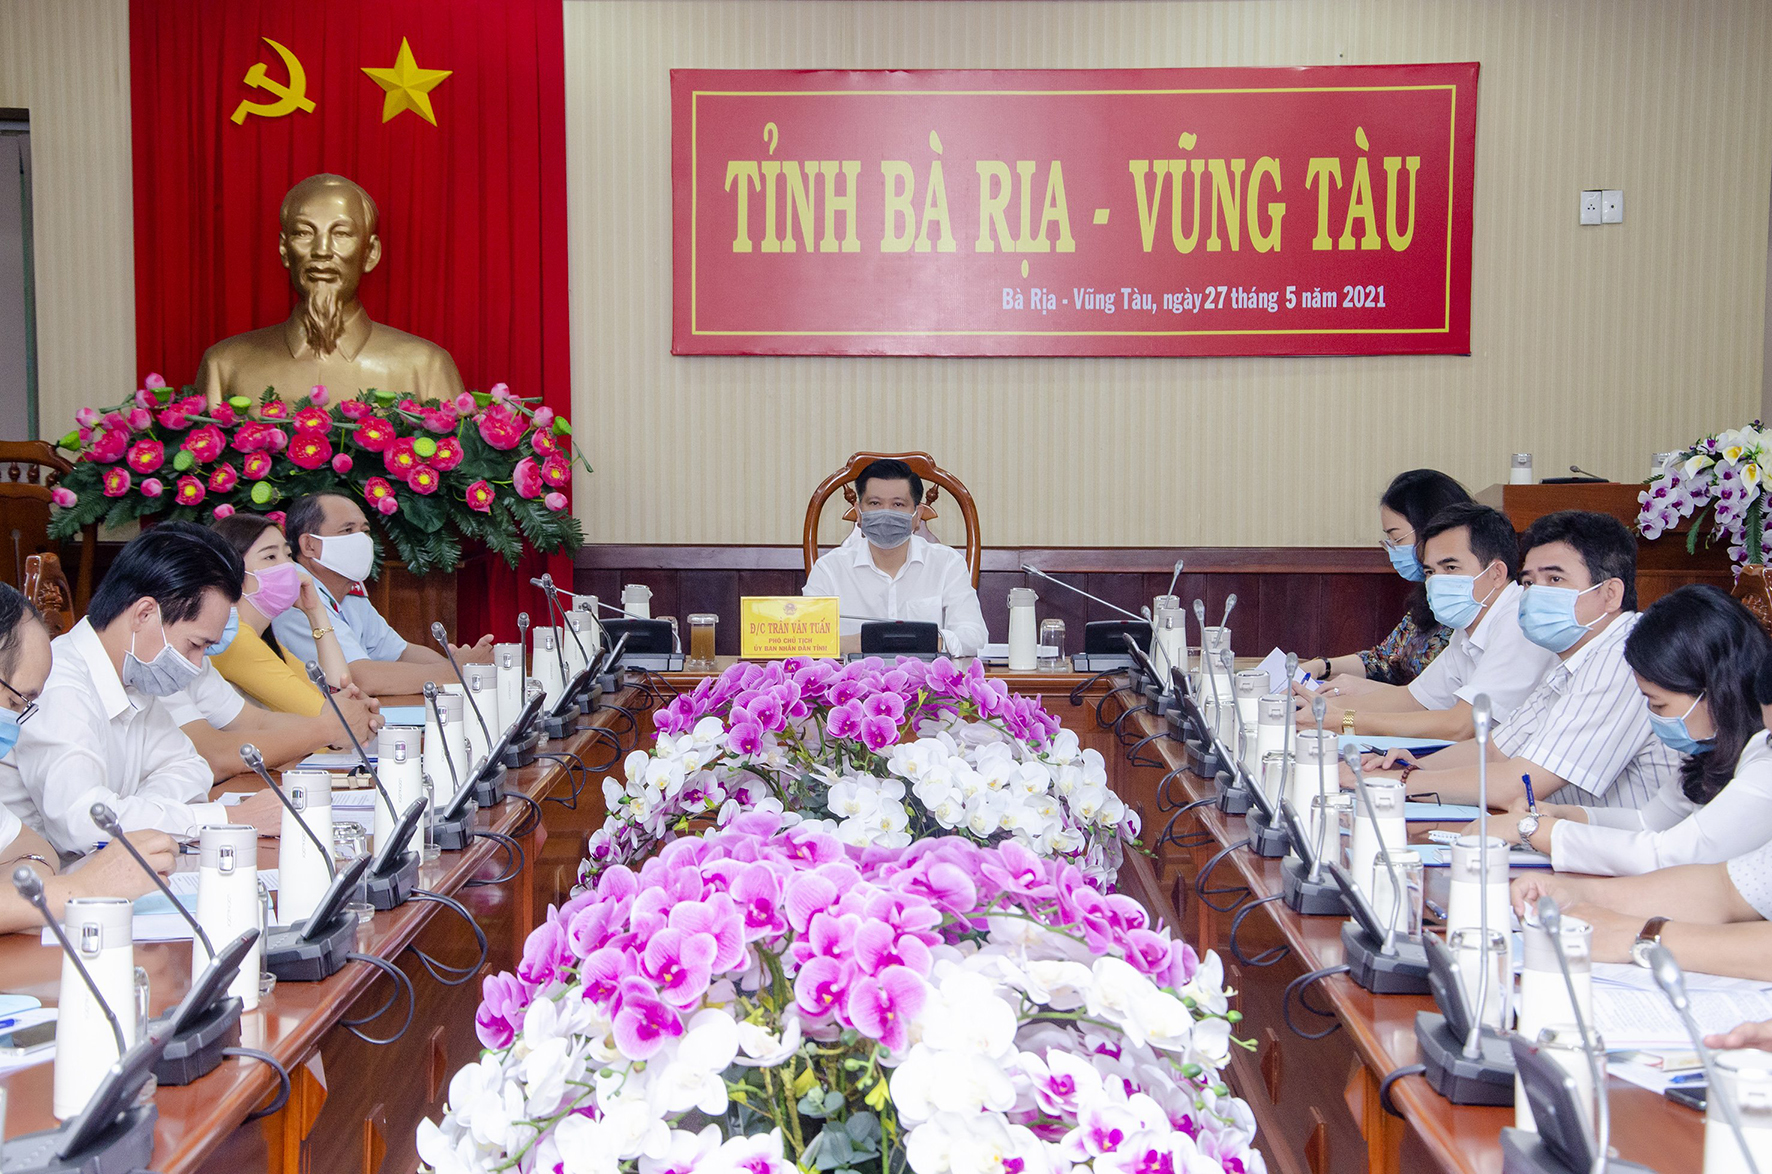 Điểm cầu tỉnh BR-VT do ông Trần Văn Tuấn, Phó Chủ tịch UBND tỉnh chủ trì.